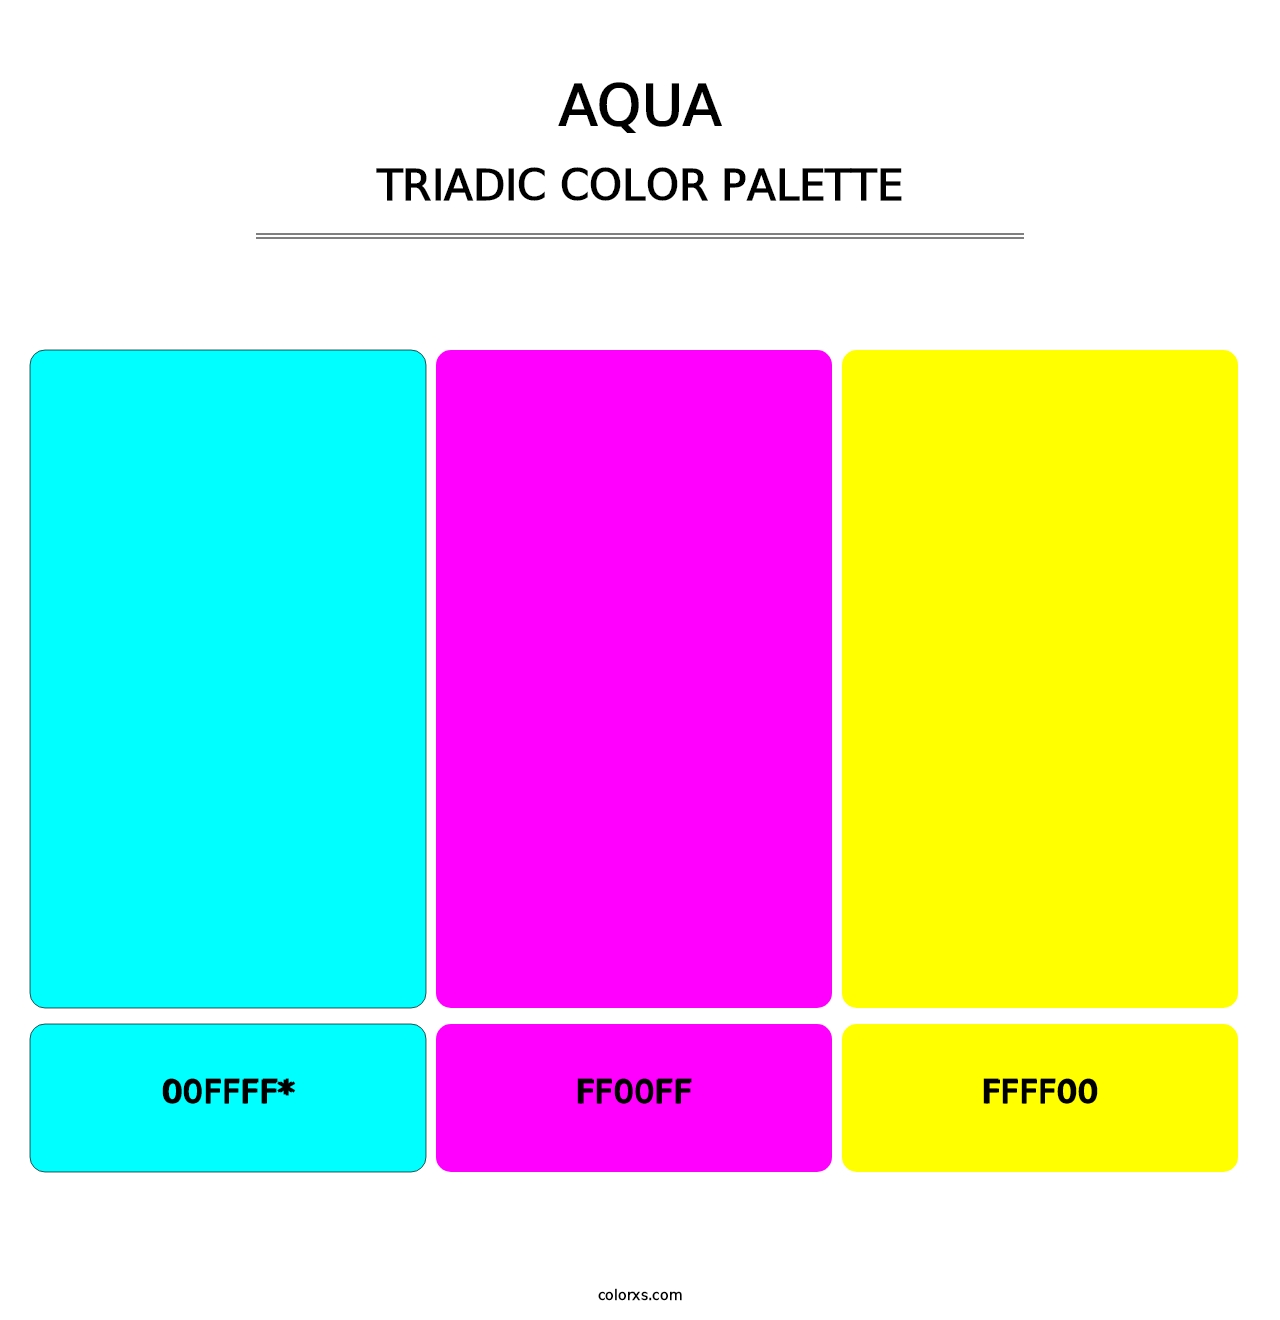 Aqua - Triadic Color Palette